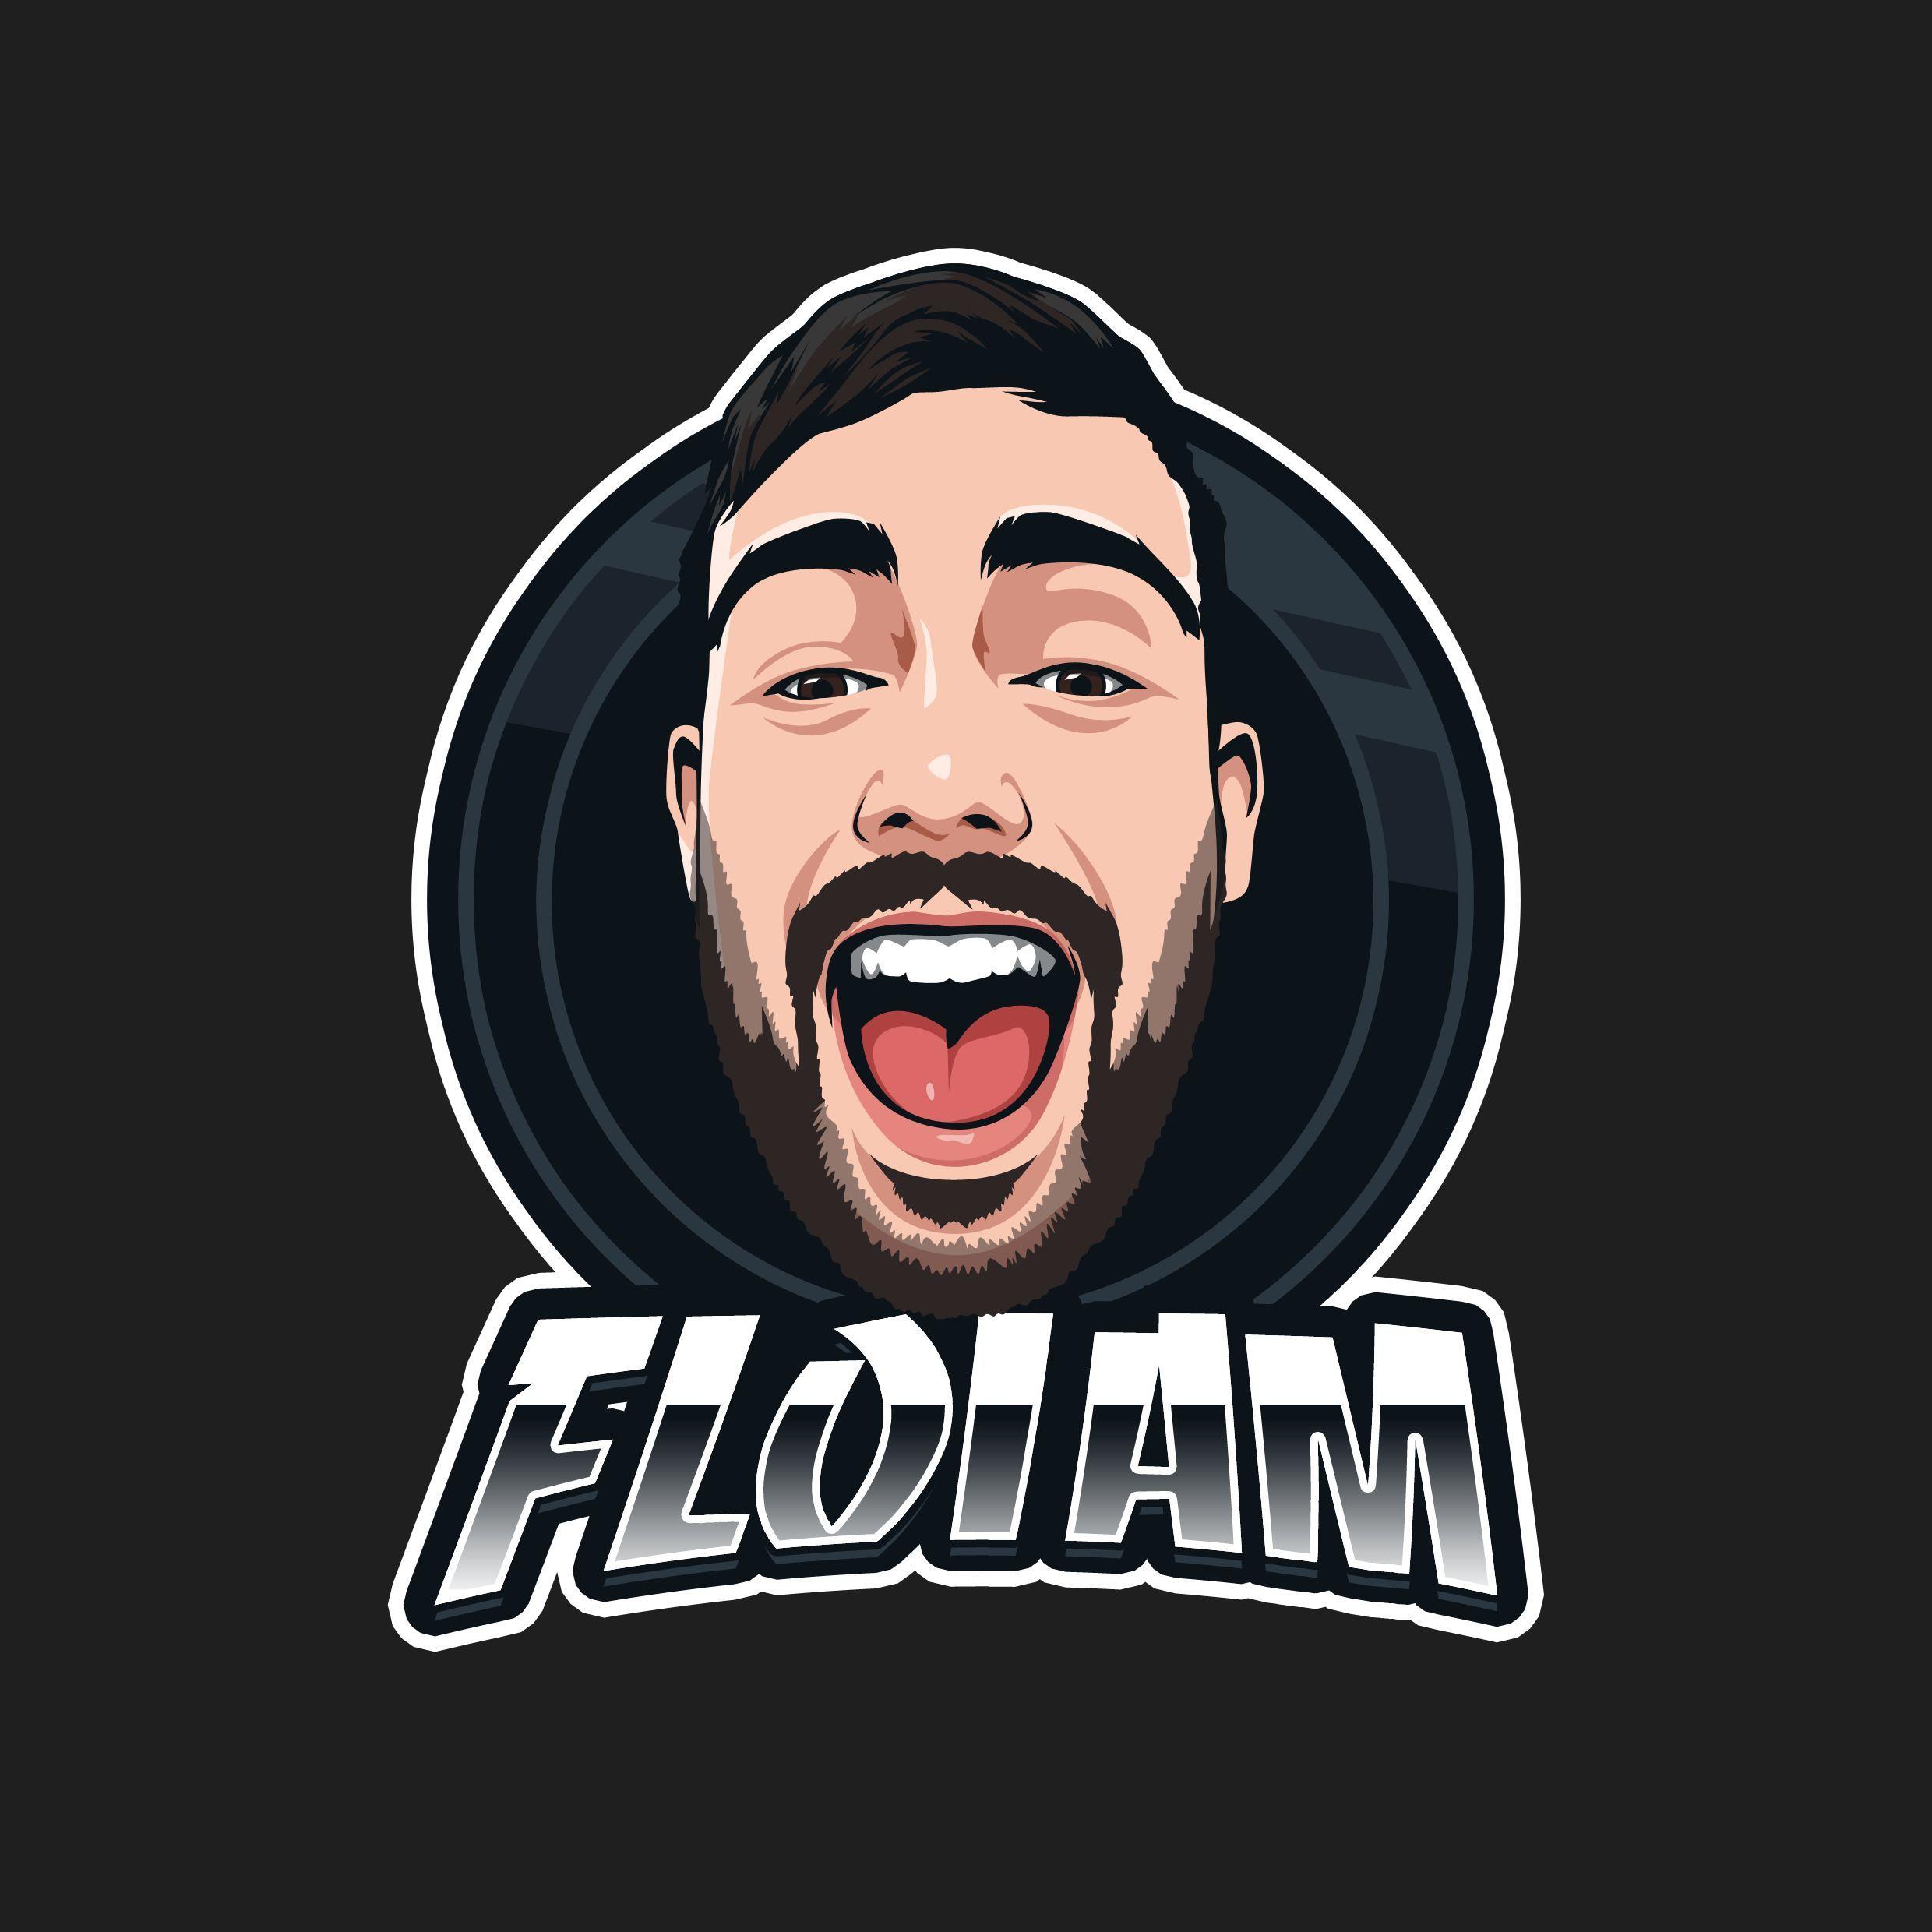 Player floiam6 avatar